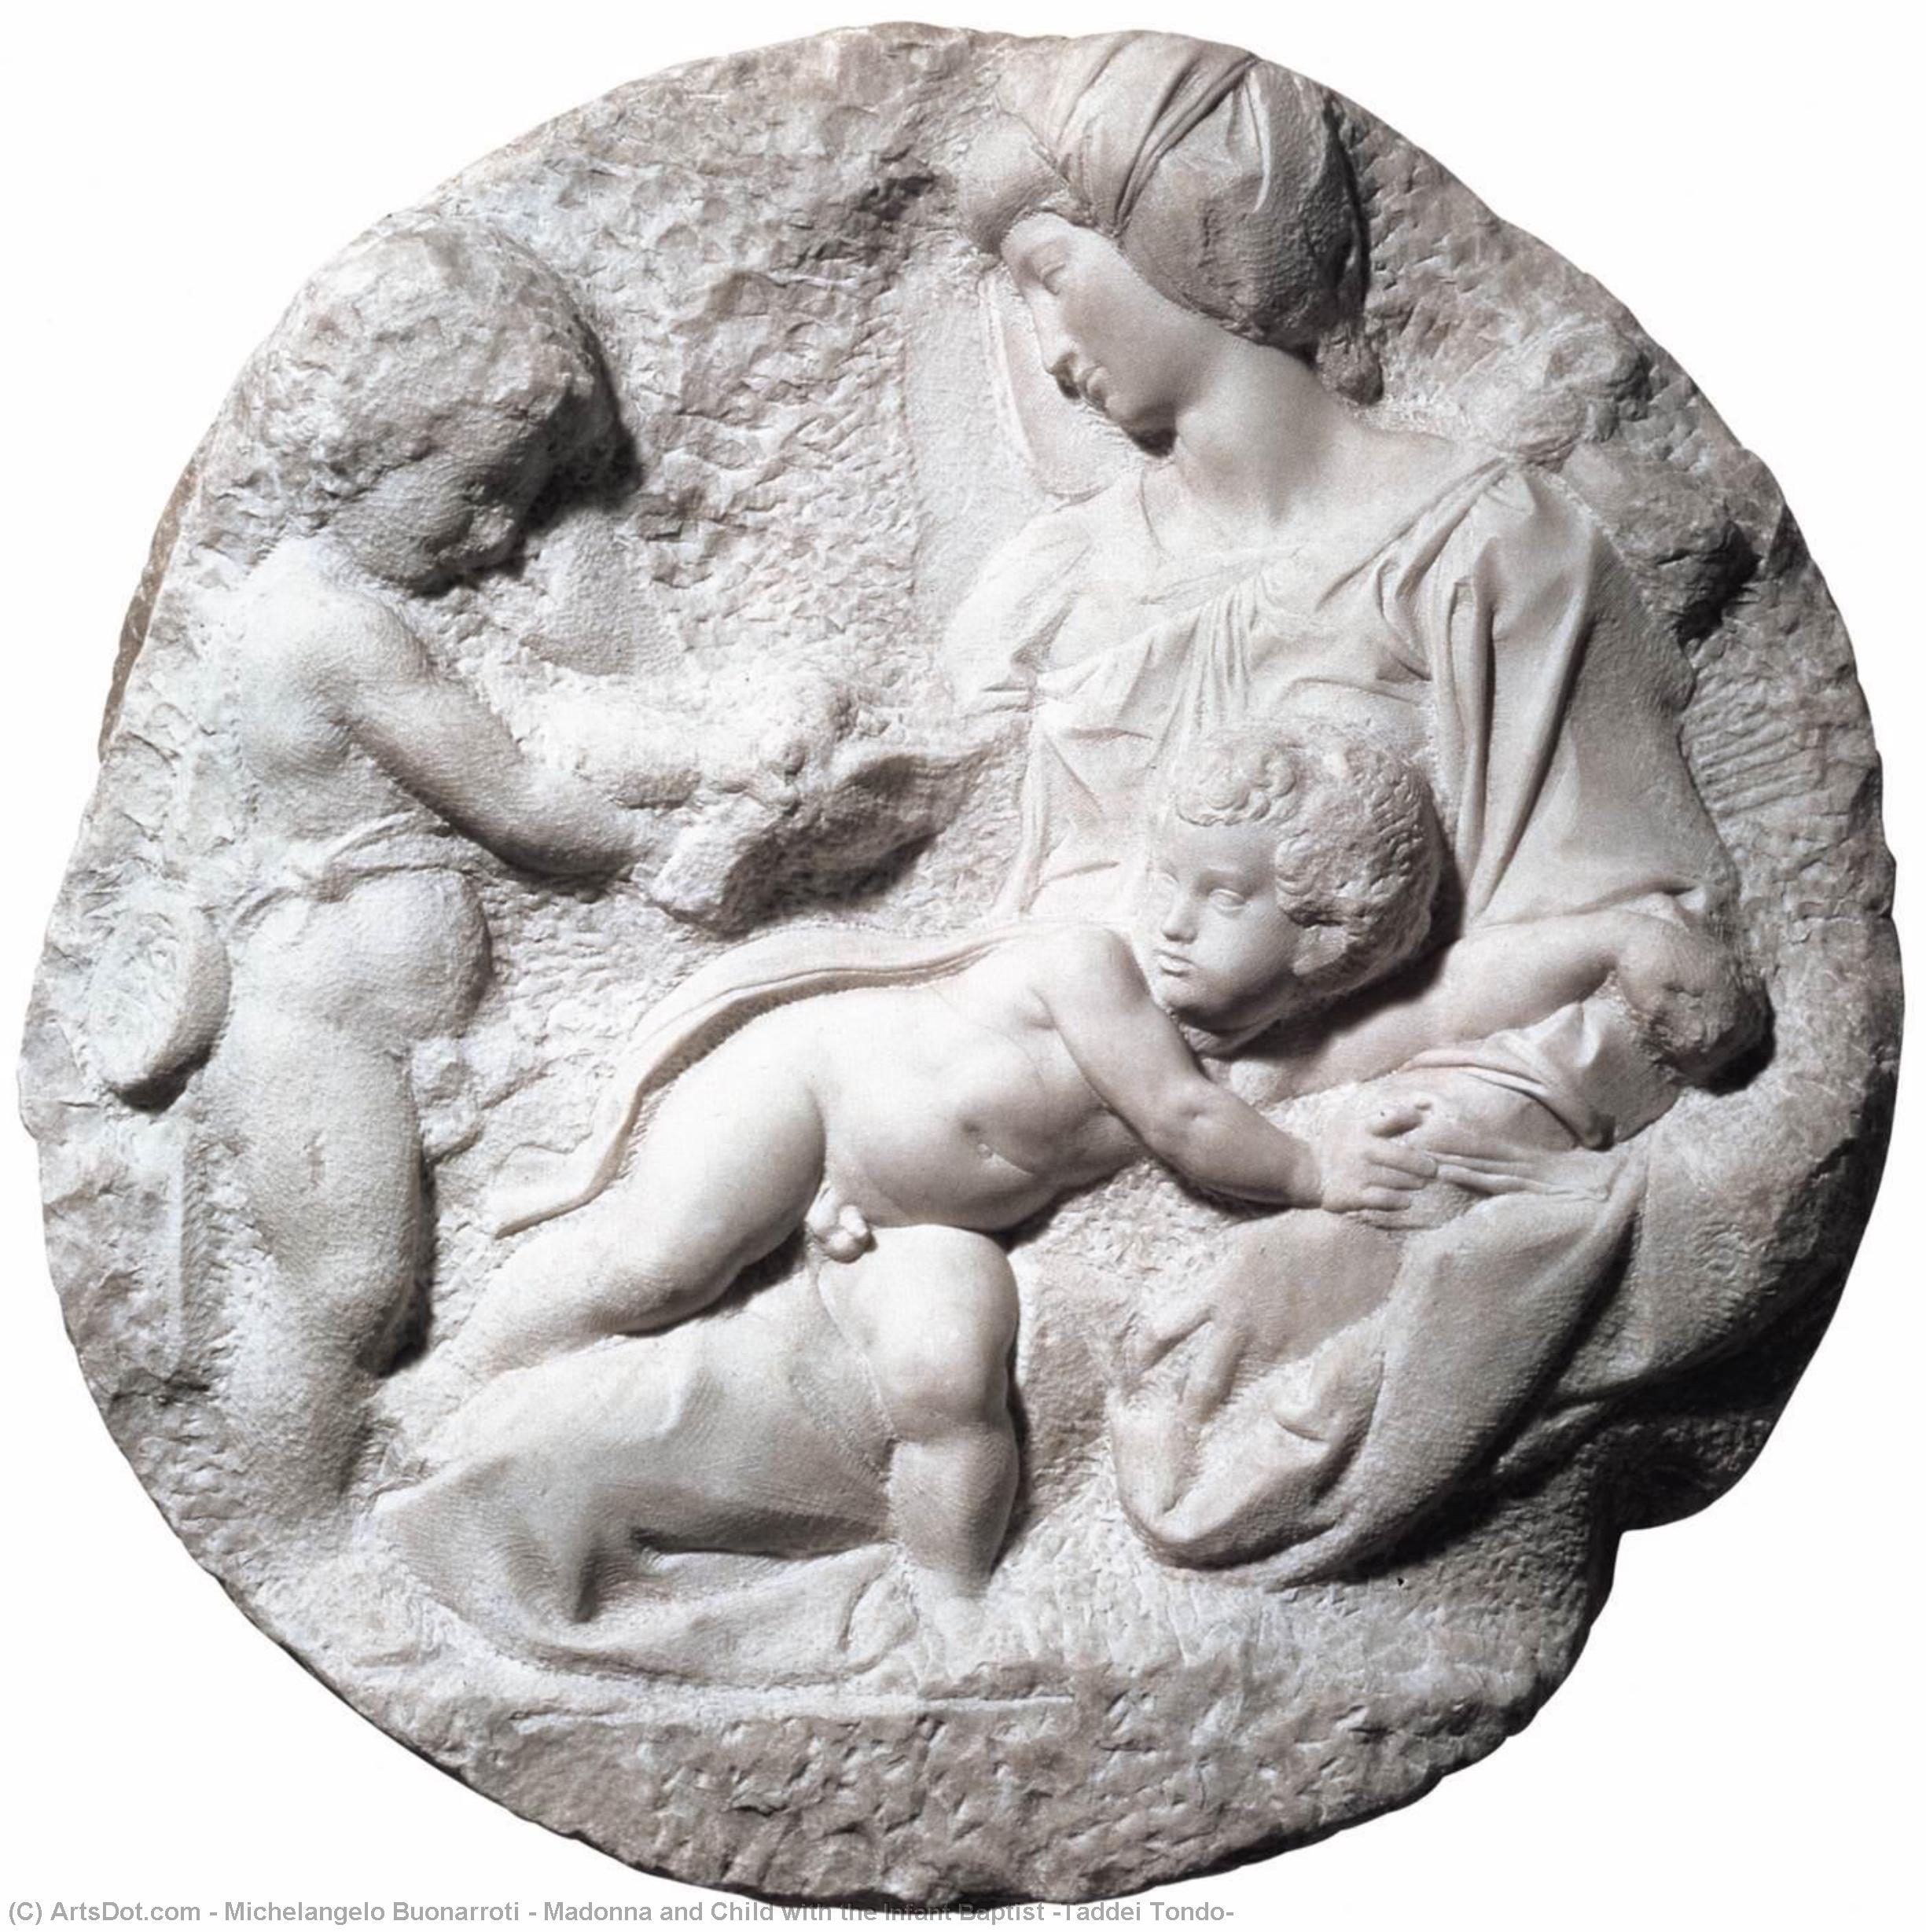 Compra Riproduzioni D'arte Del Museo Madonna col Bambino con il Battista Infante (Taddei Tondo), 1505 di Michelangelo Buonarroti (1475-1564, Italy) | ArtsDot.com